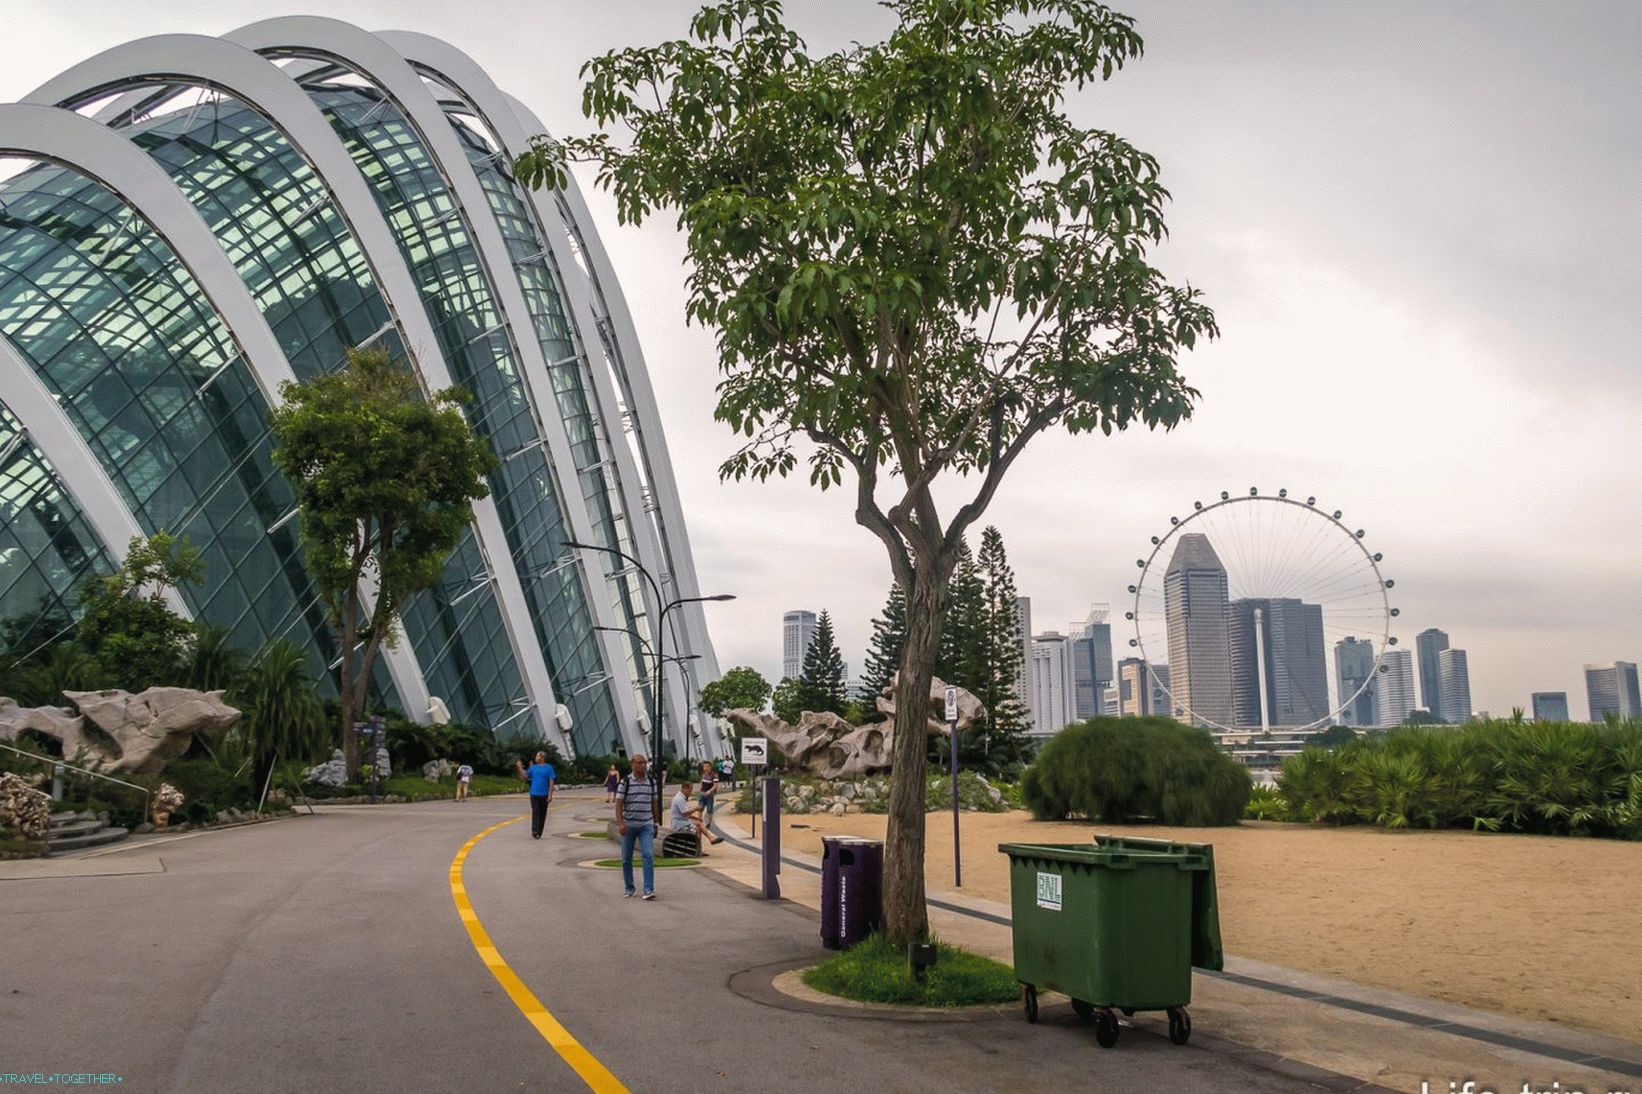 Градини край залива в Сингапур - основната атракция